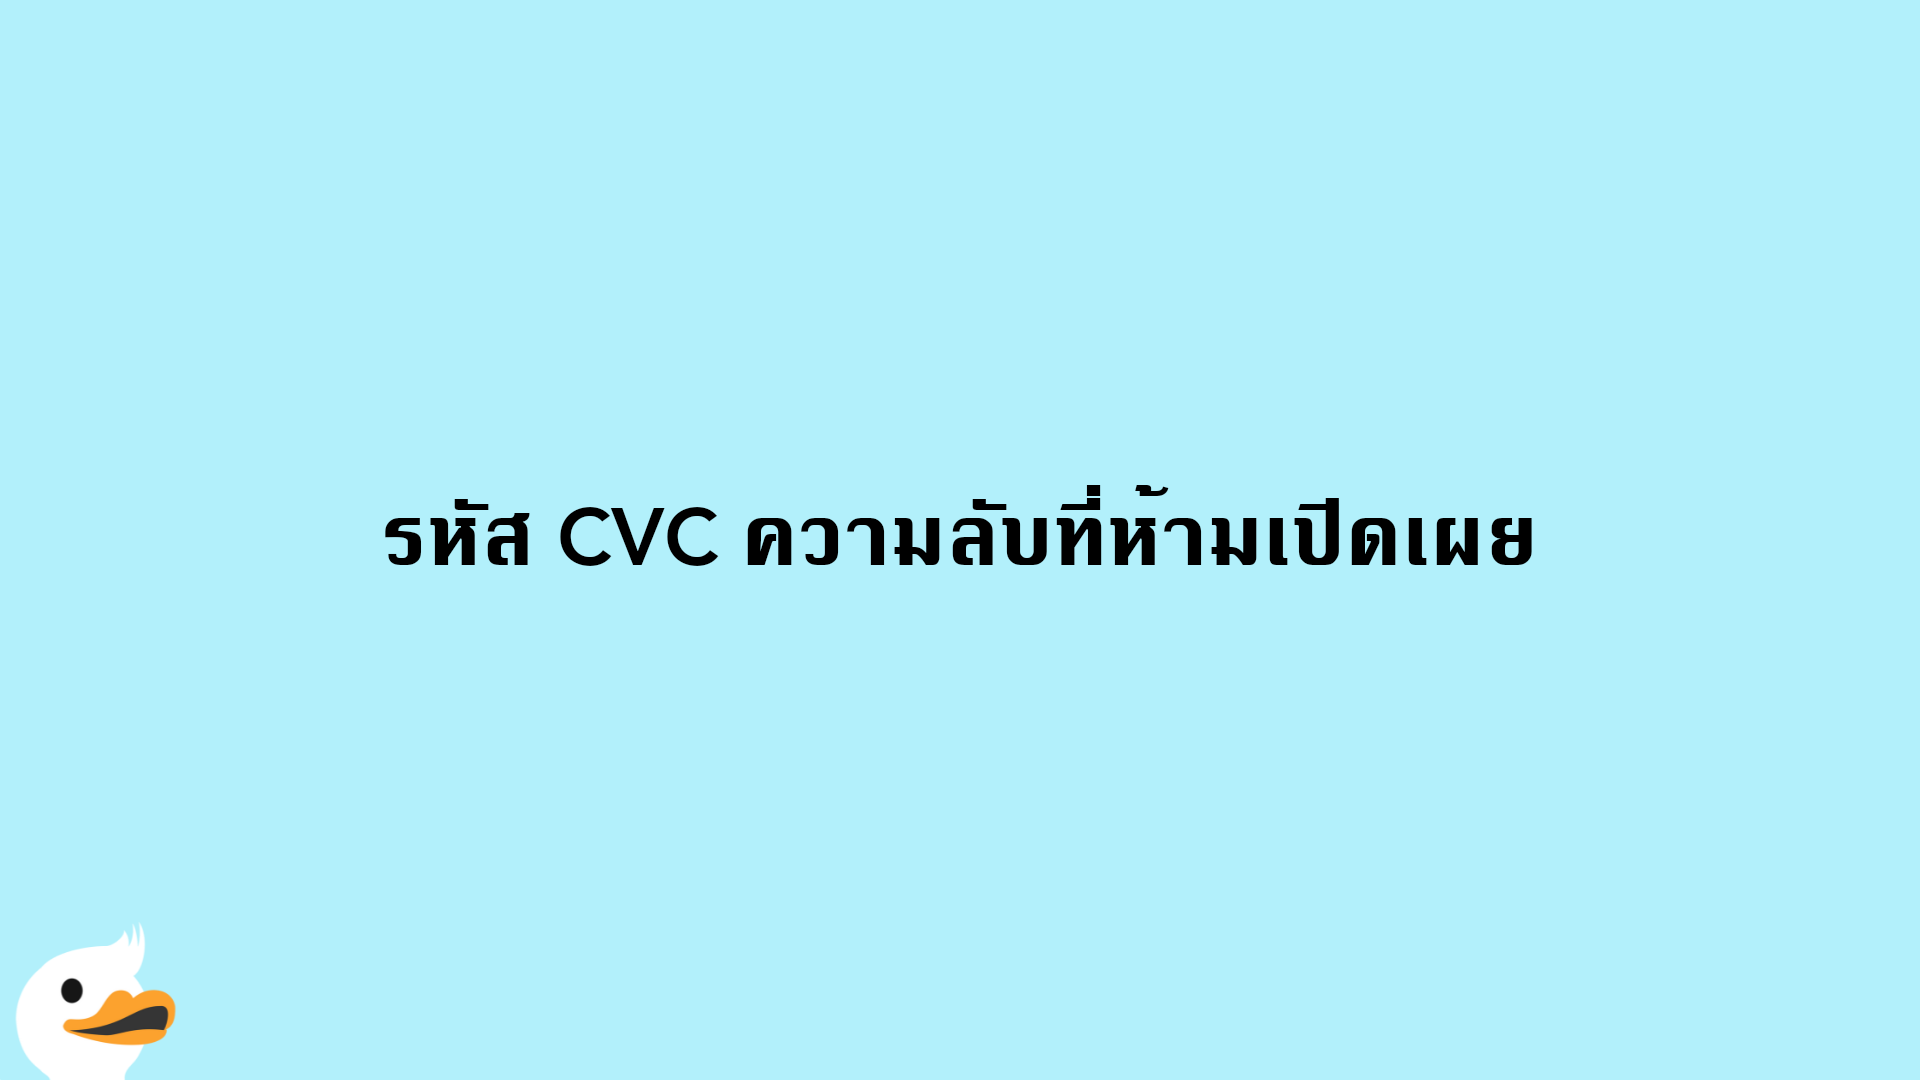 รหัส CVC ความลับที่ห้ามเปิดเผย